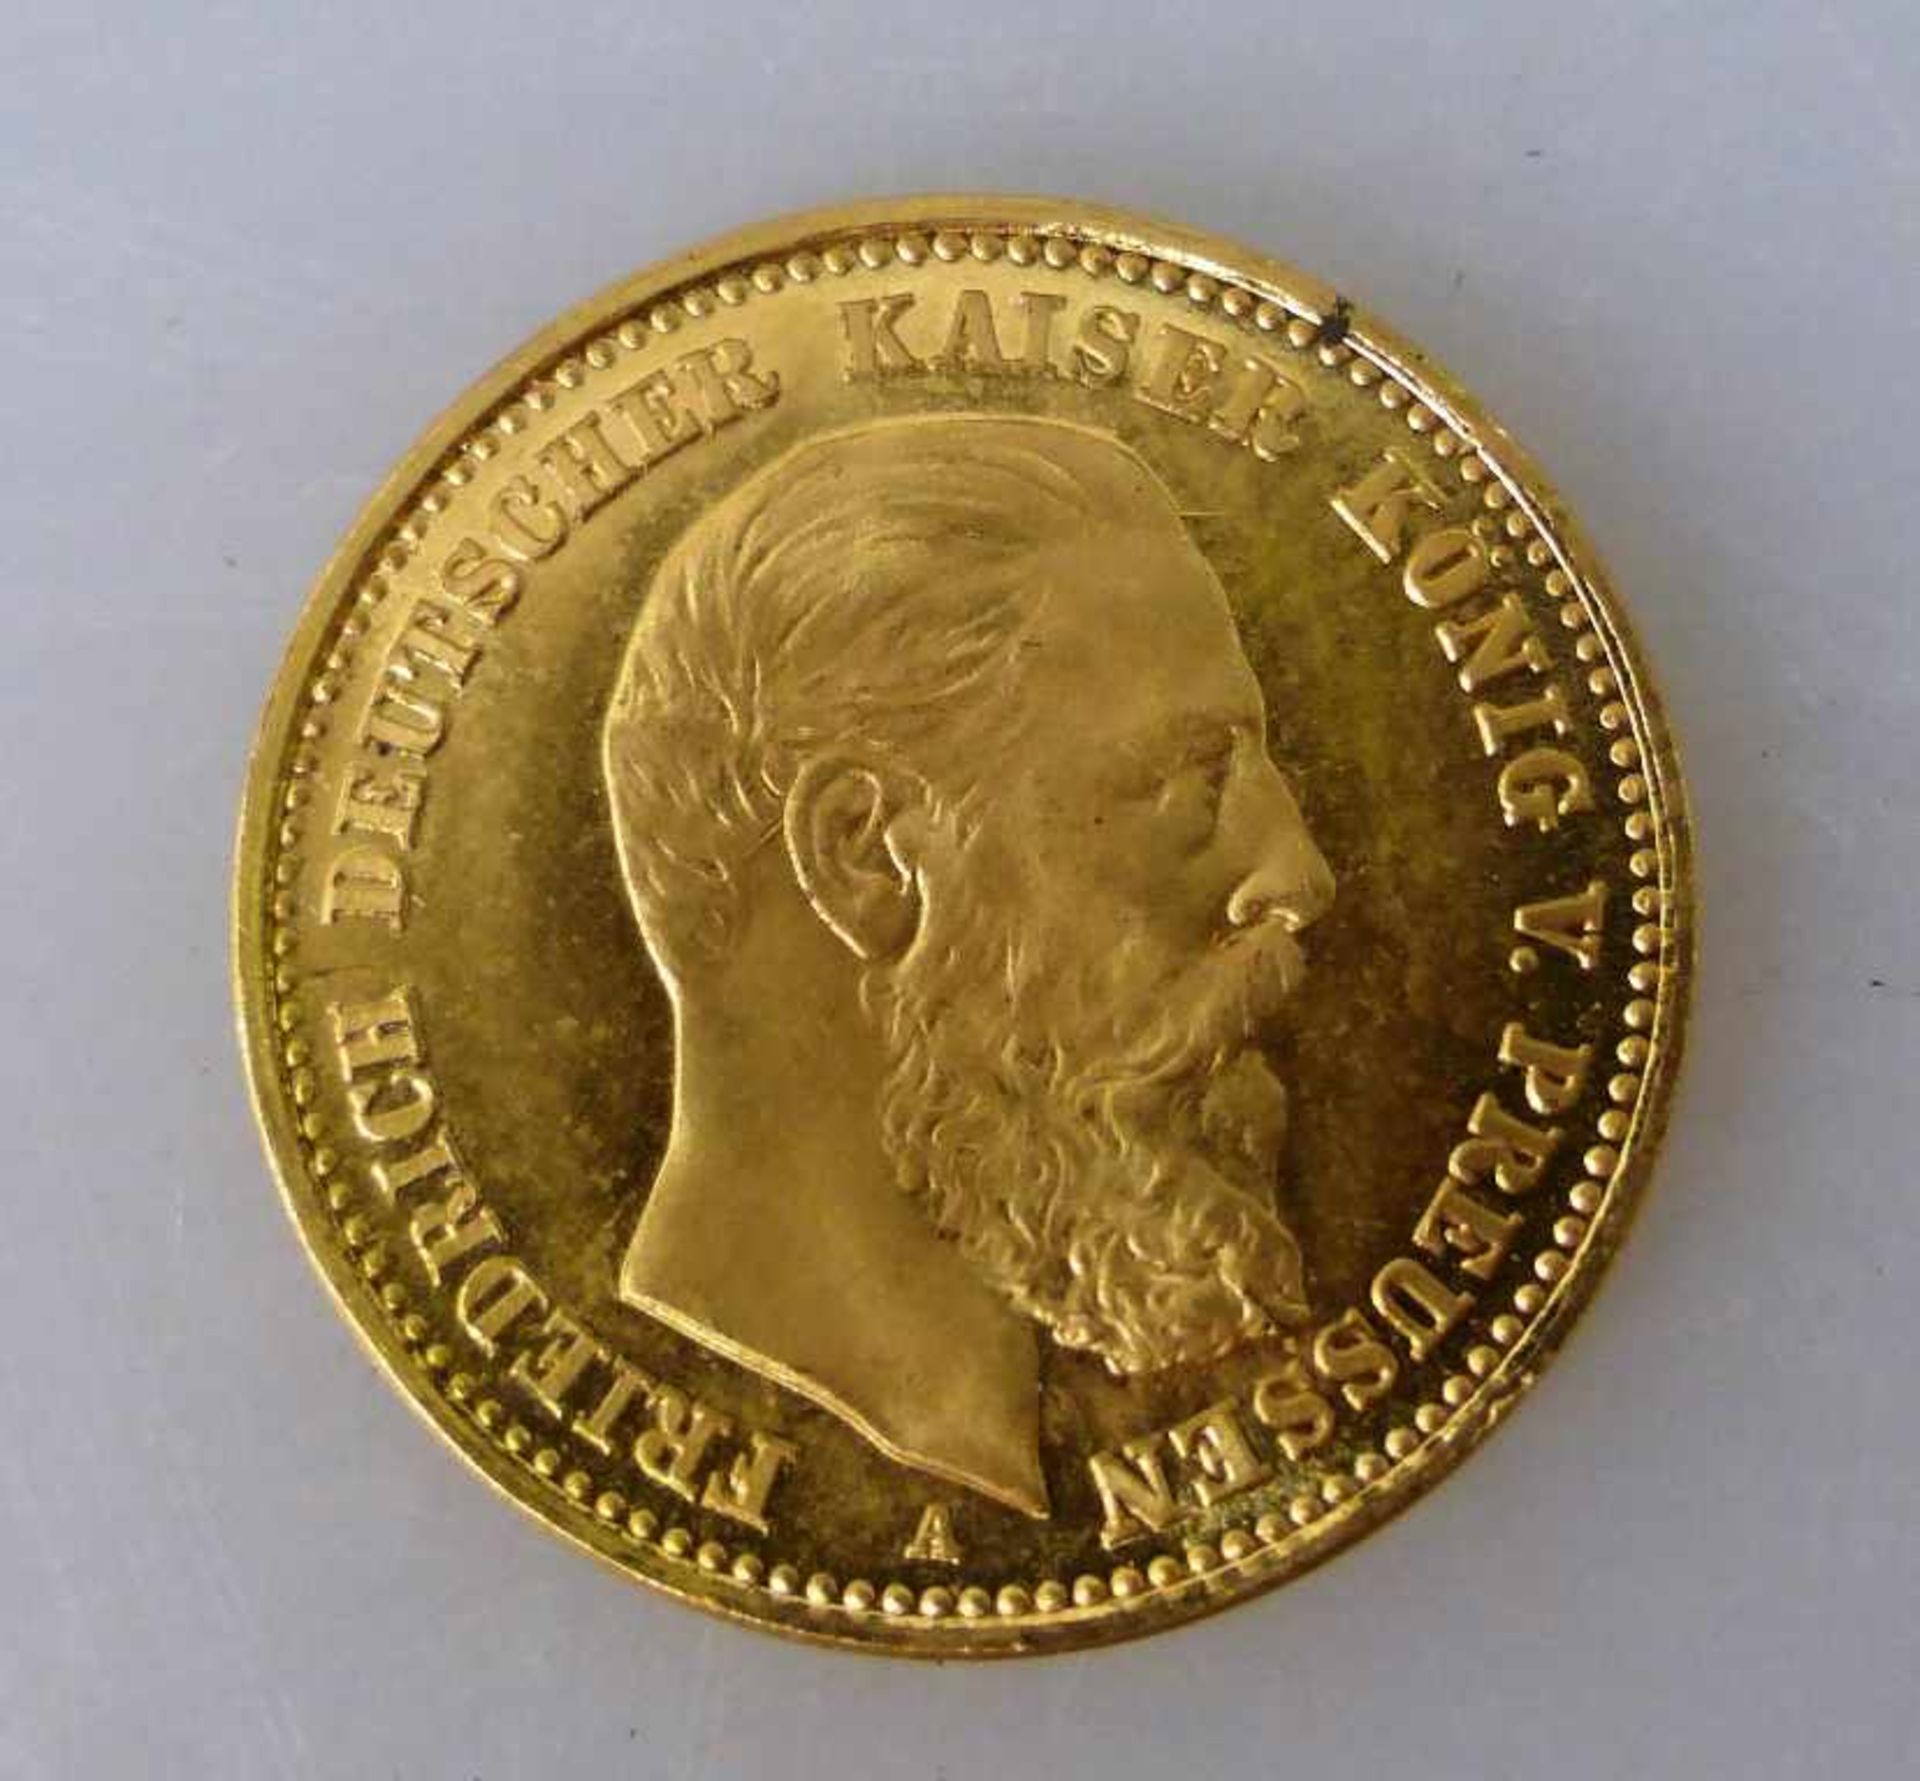 Goldmünze, 10 Mark, Kaiserreich, 1888, Friedrich König von Preussen, Prägemarke A